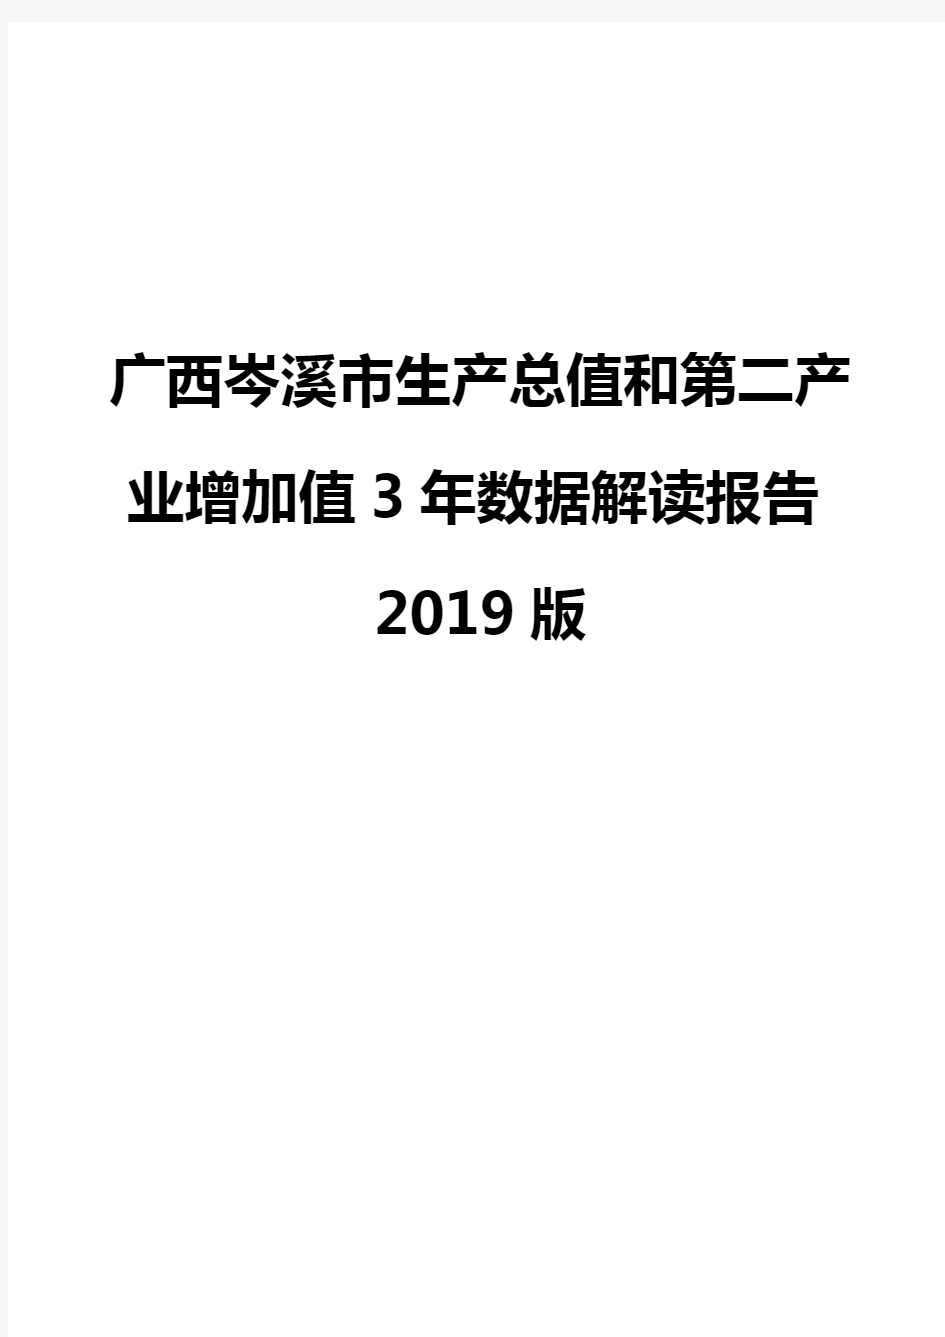 广西岑溪市生产总值和第二产业增加值3年数据解读报告2019版